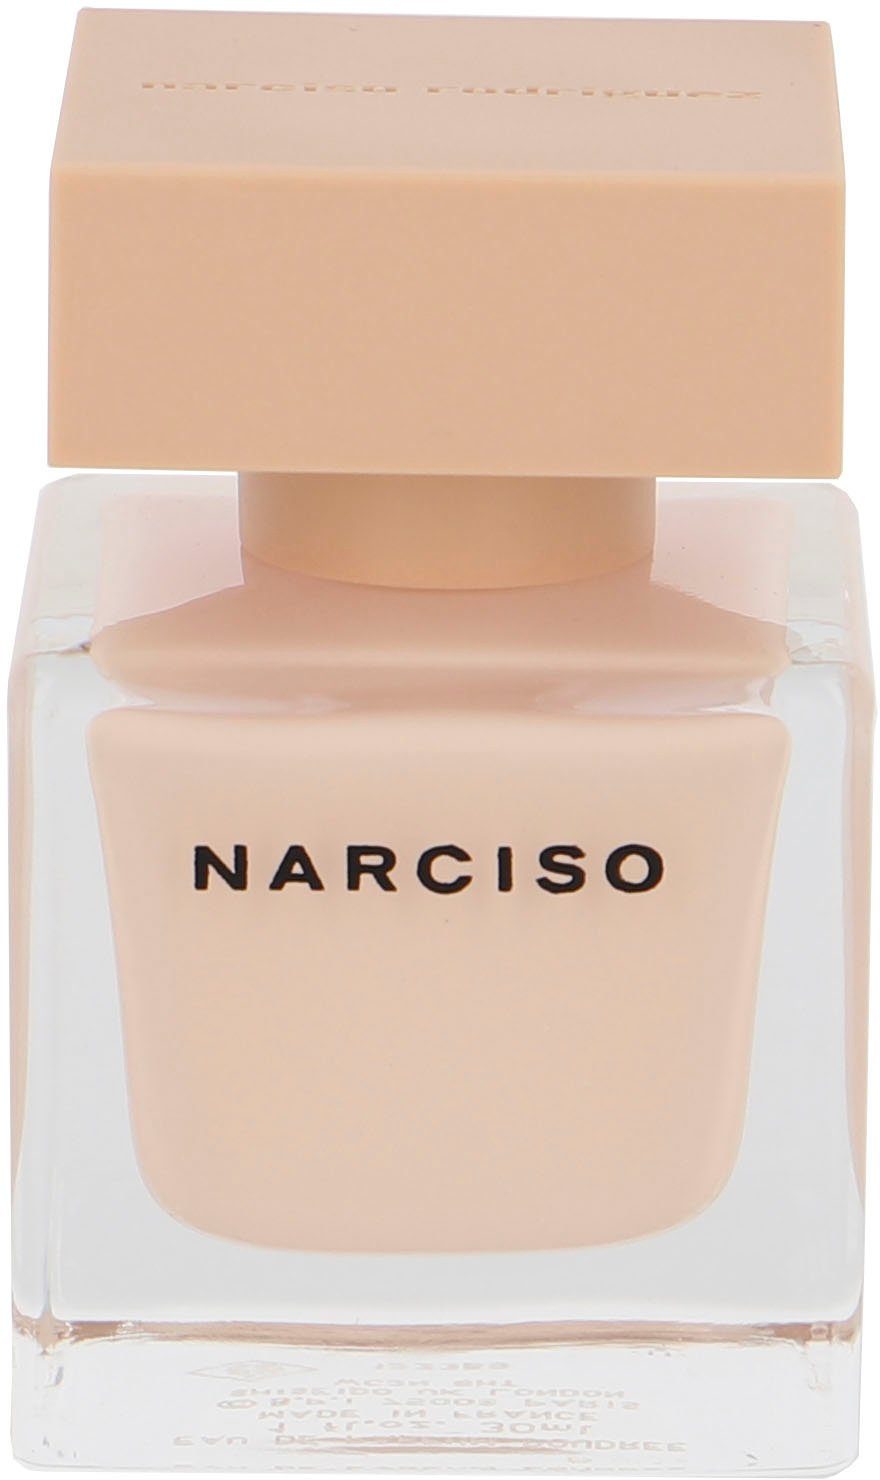 narciso rodriguez Eau Poudree Rodriguez Parfum de Narciso